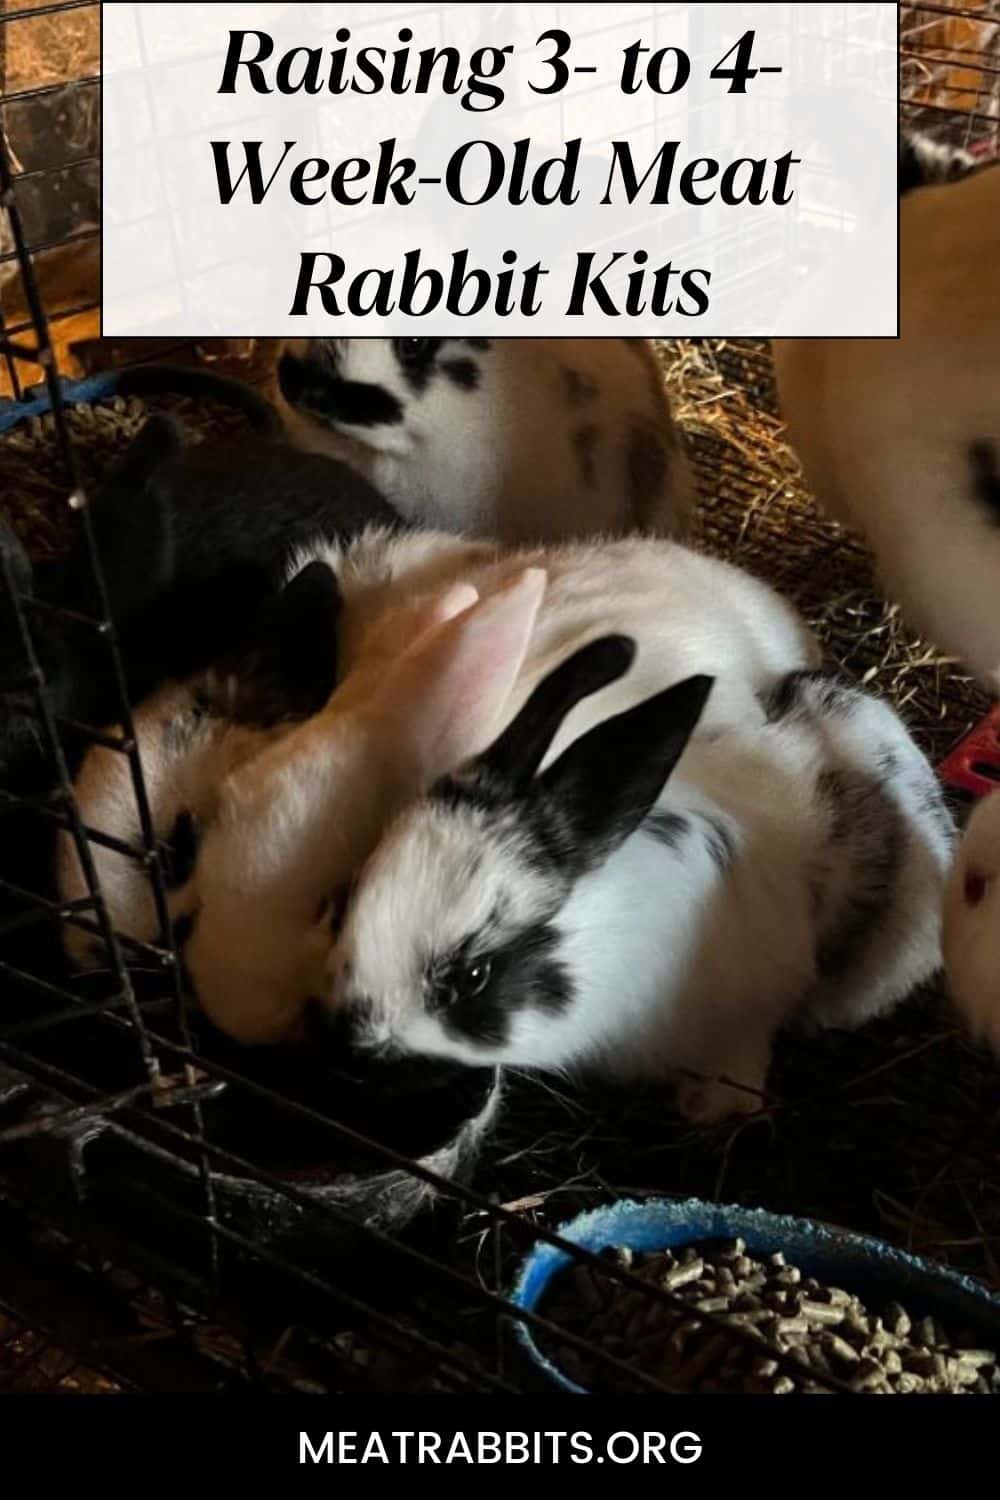 Raising 3- to 4-Week-Old Meat Rabbit Kits pinterest image.